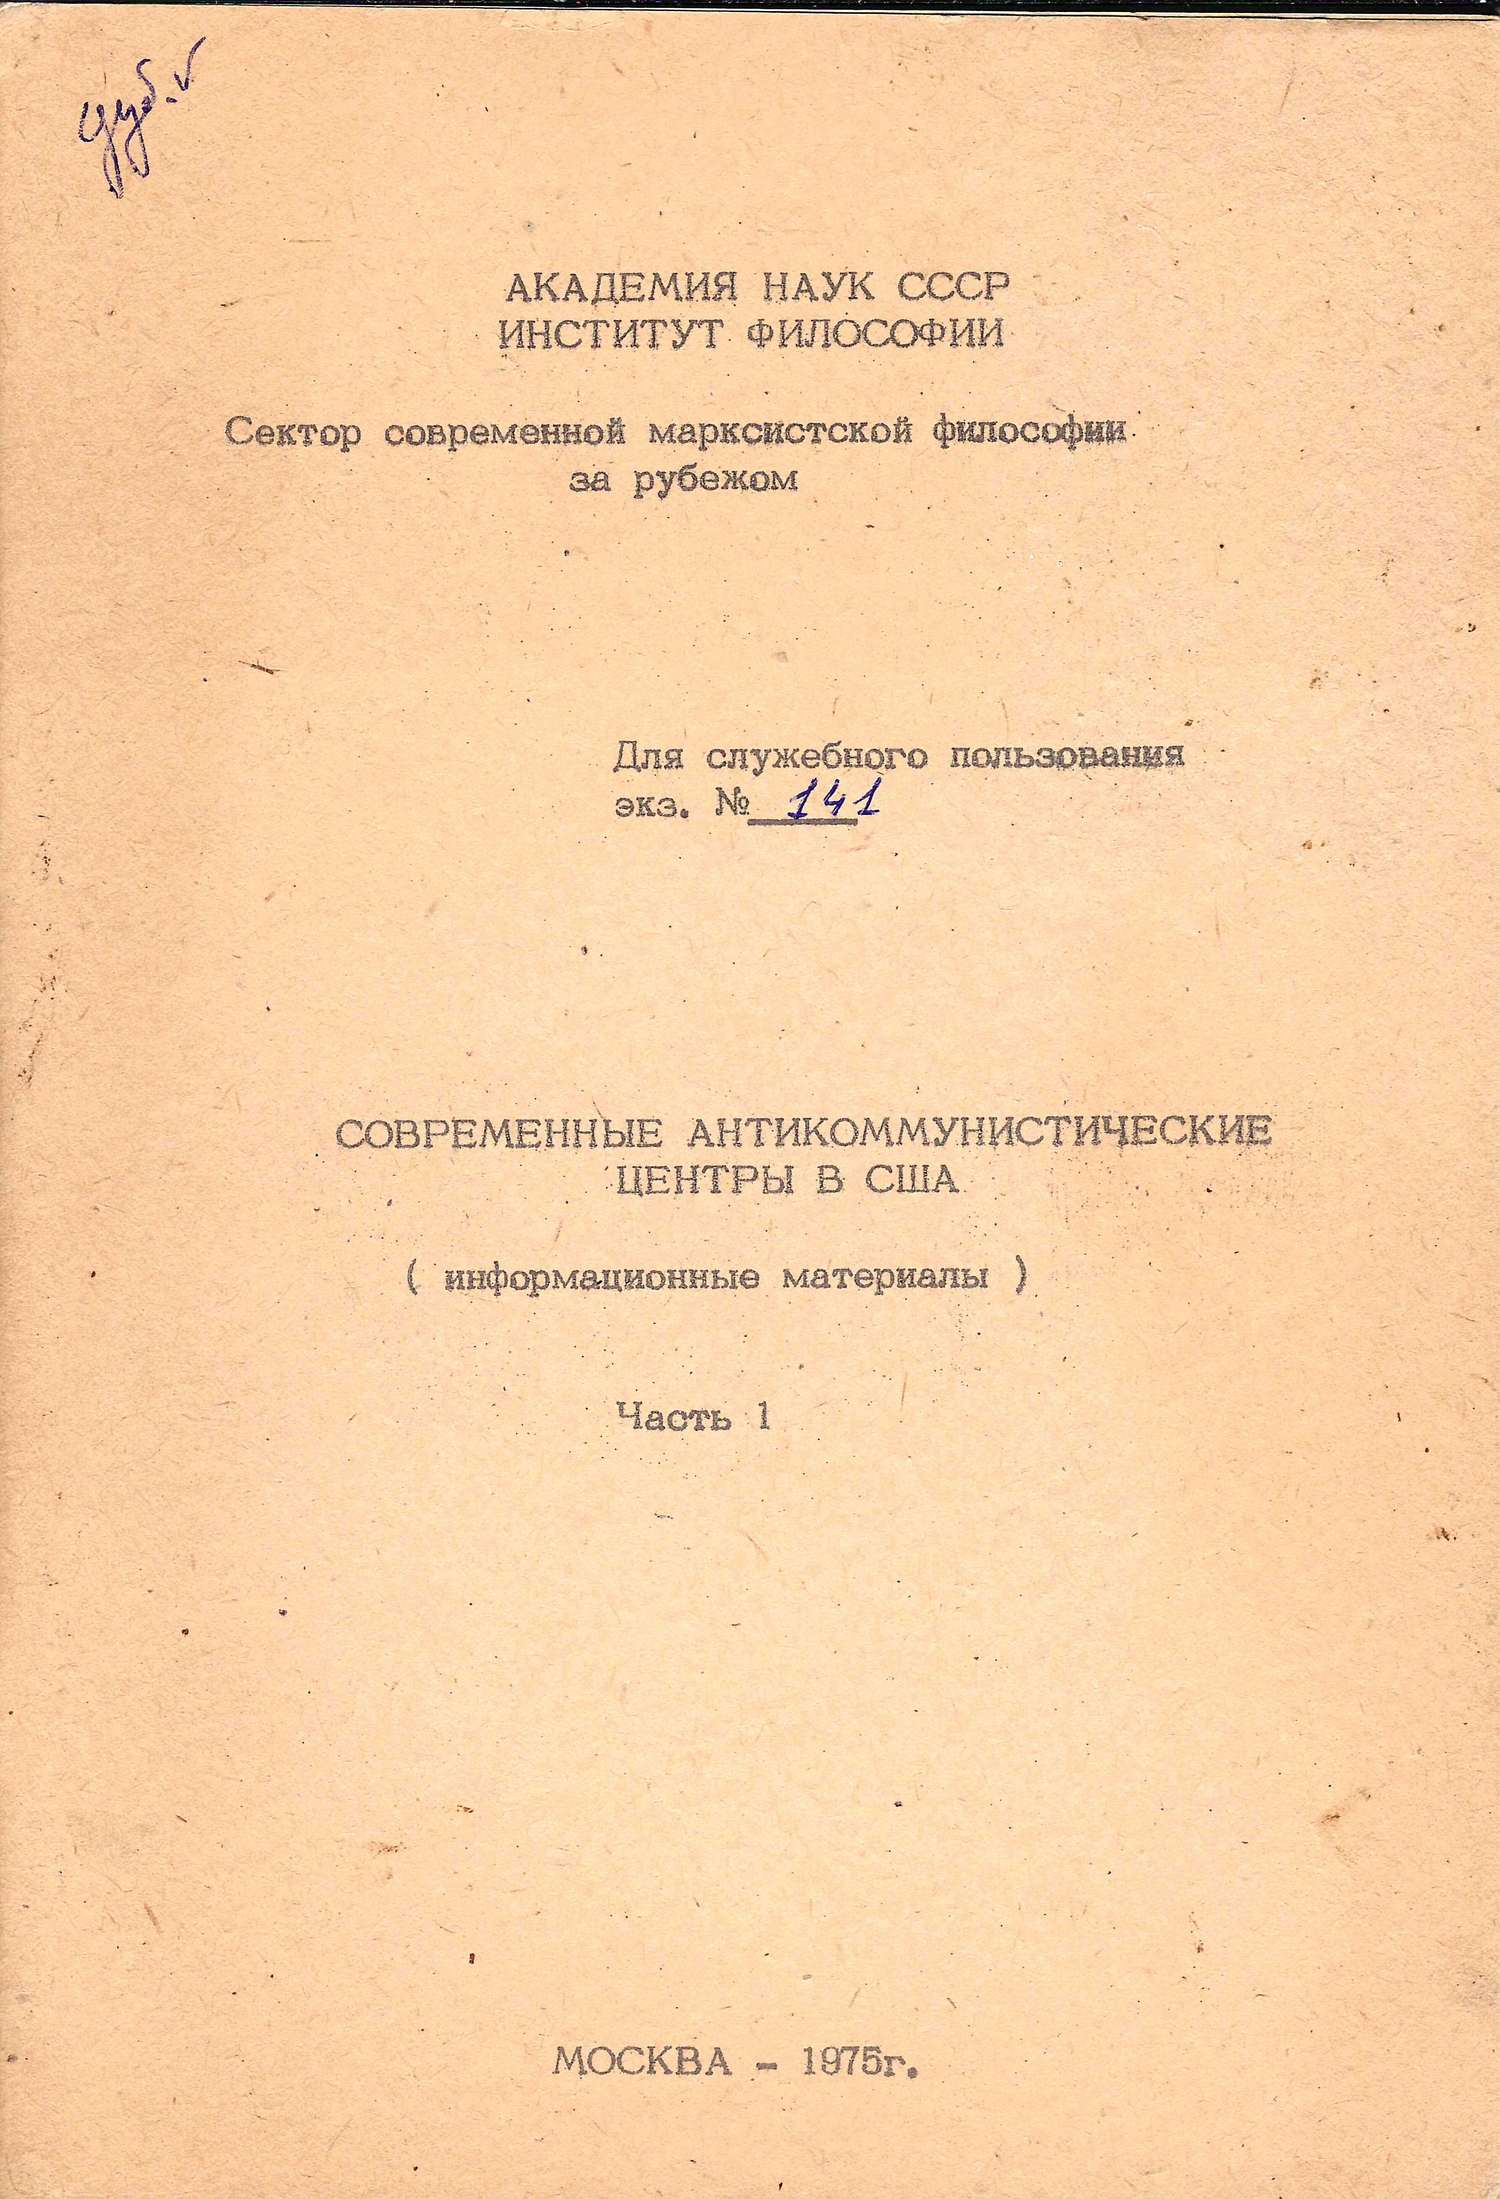 (Для служебного пользования) Современные антикоммунистические центры в США (информационные материалы) Ч. I (М., 1975).